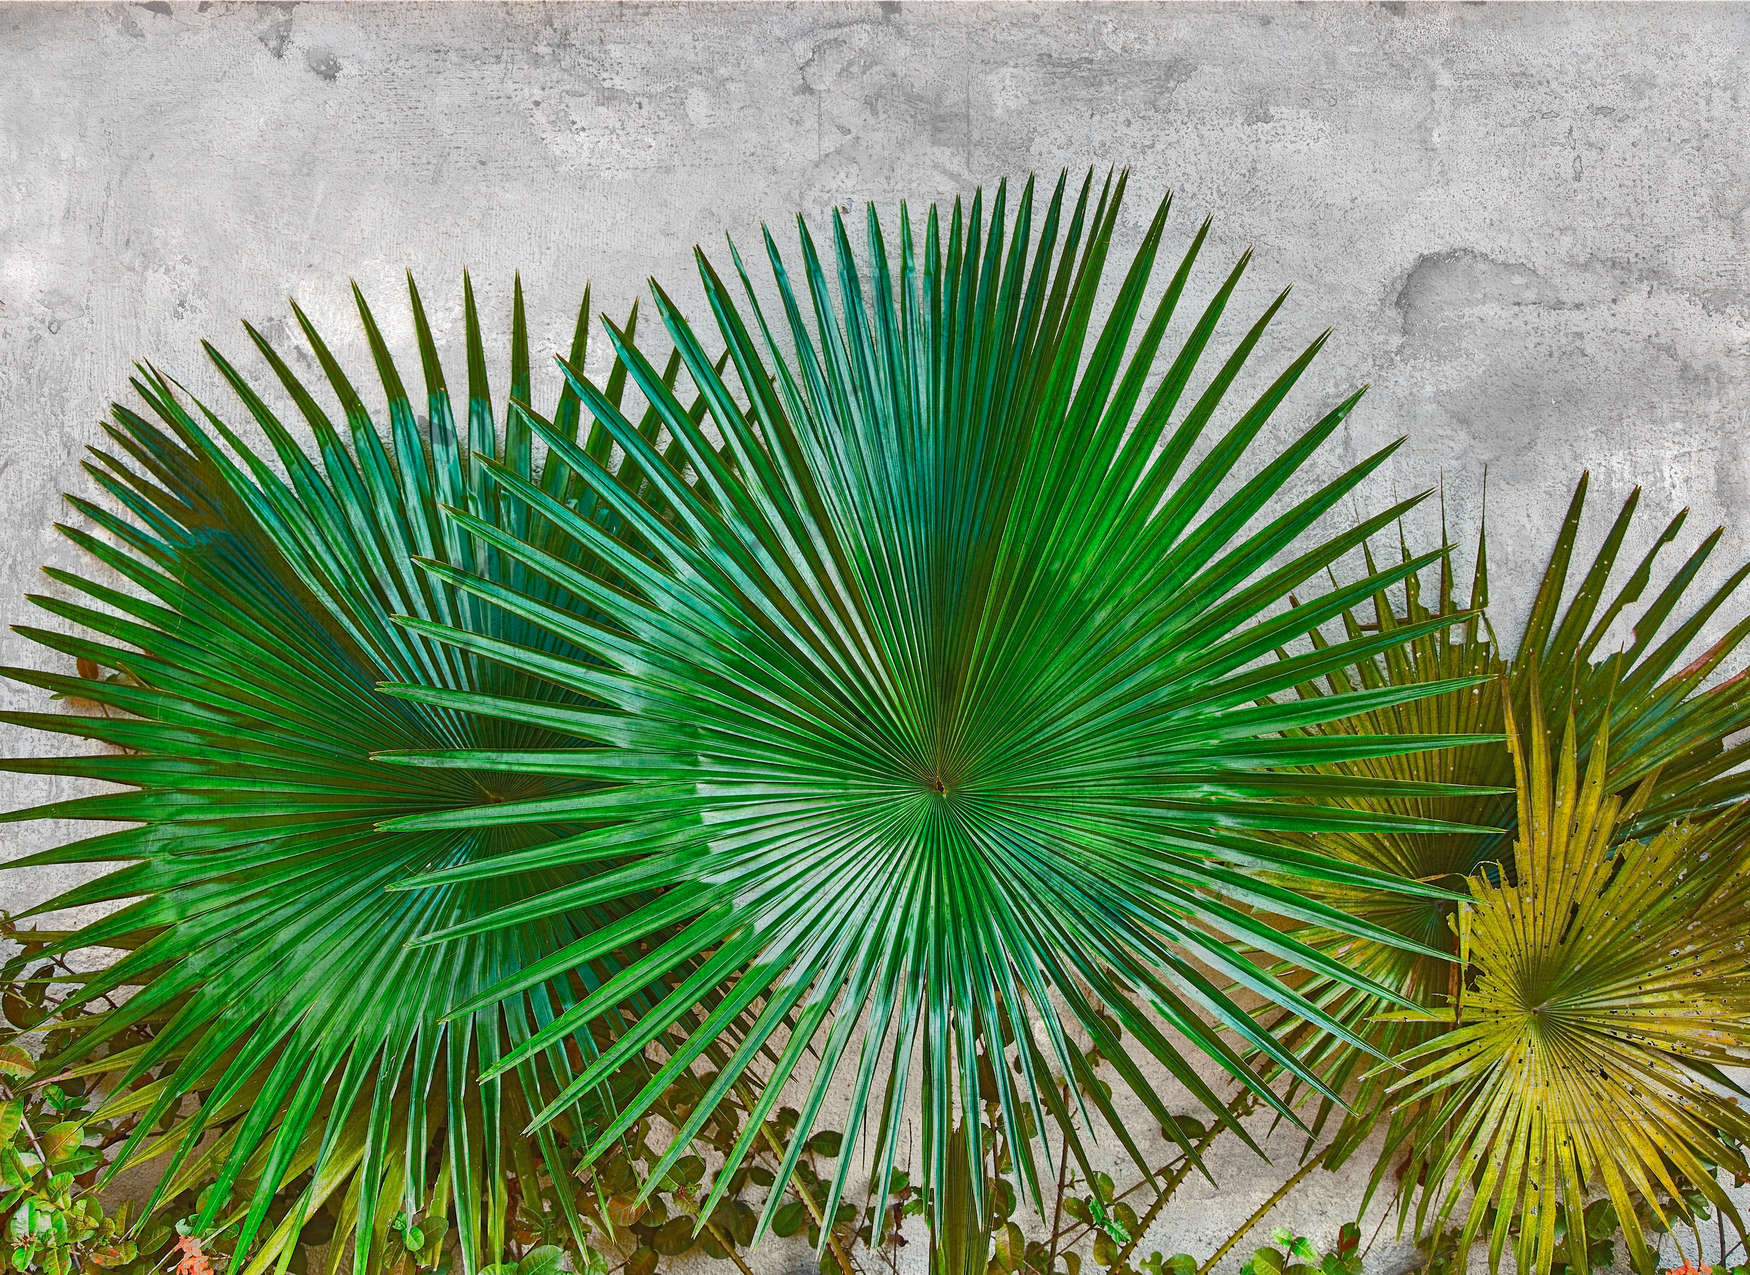             Digital behang Agave bladeren voor betonnen muur - Groen, Grijs
        